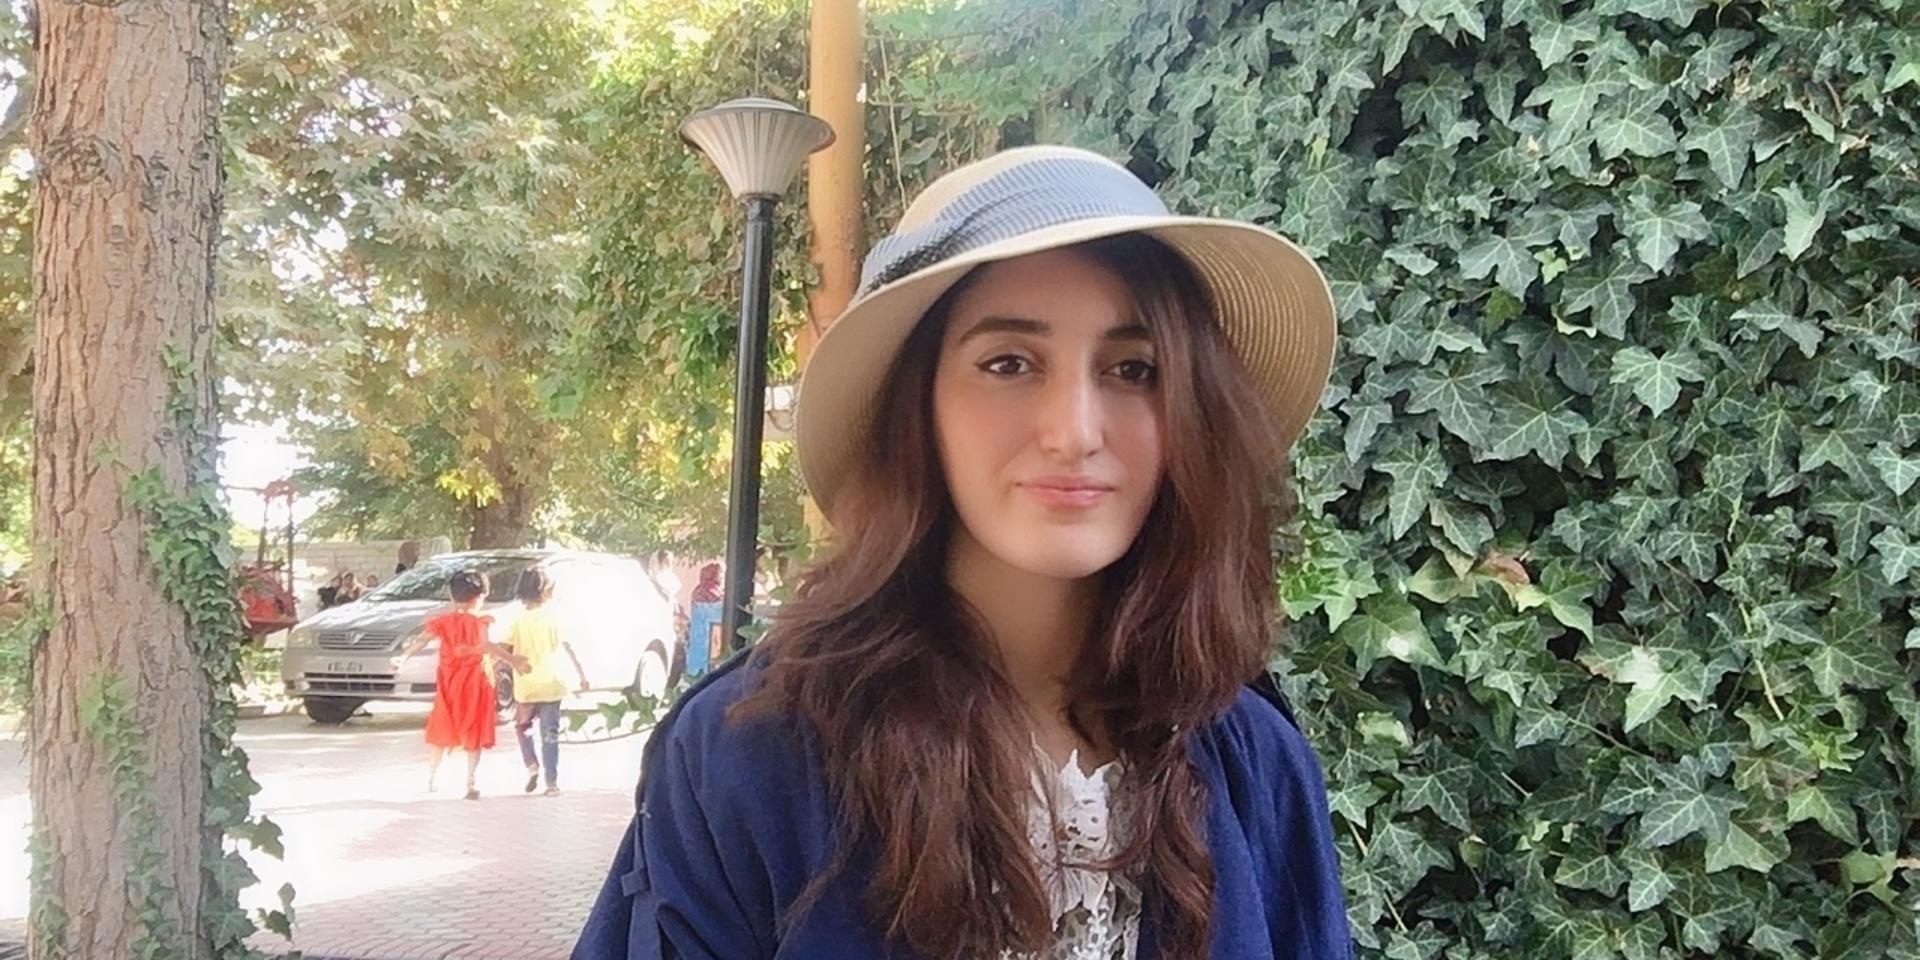 20-åriga Najla Faizy, som jobbar som personalvetare, vägrar tro att talibanerna har reformerats i frågan om kvinnors rättigheter.